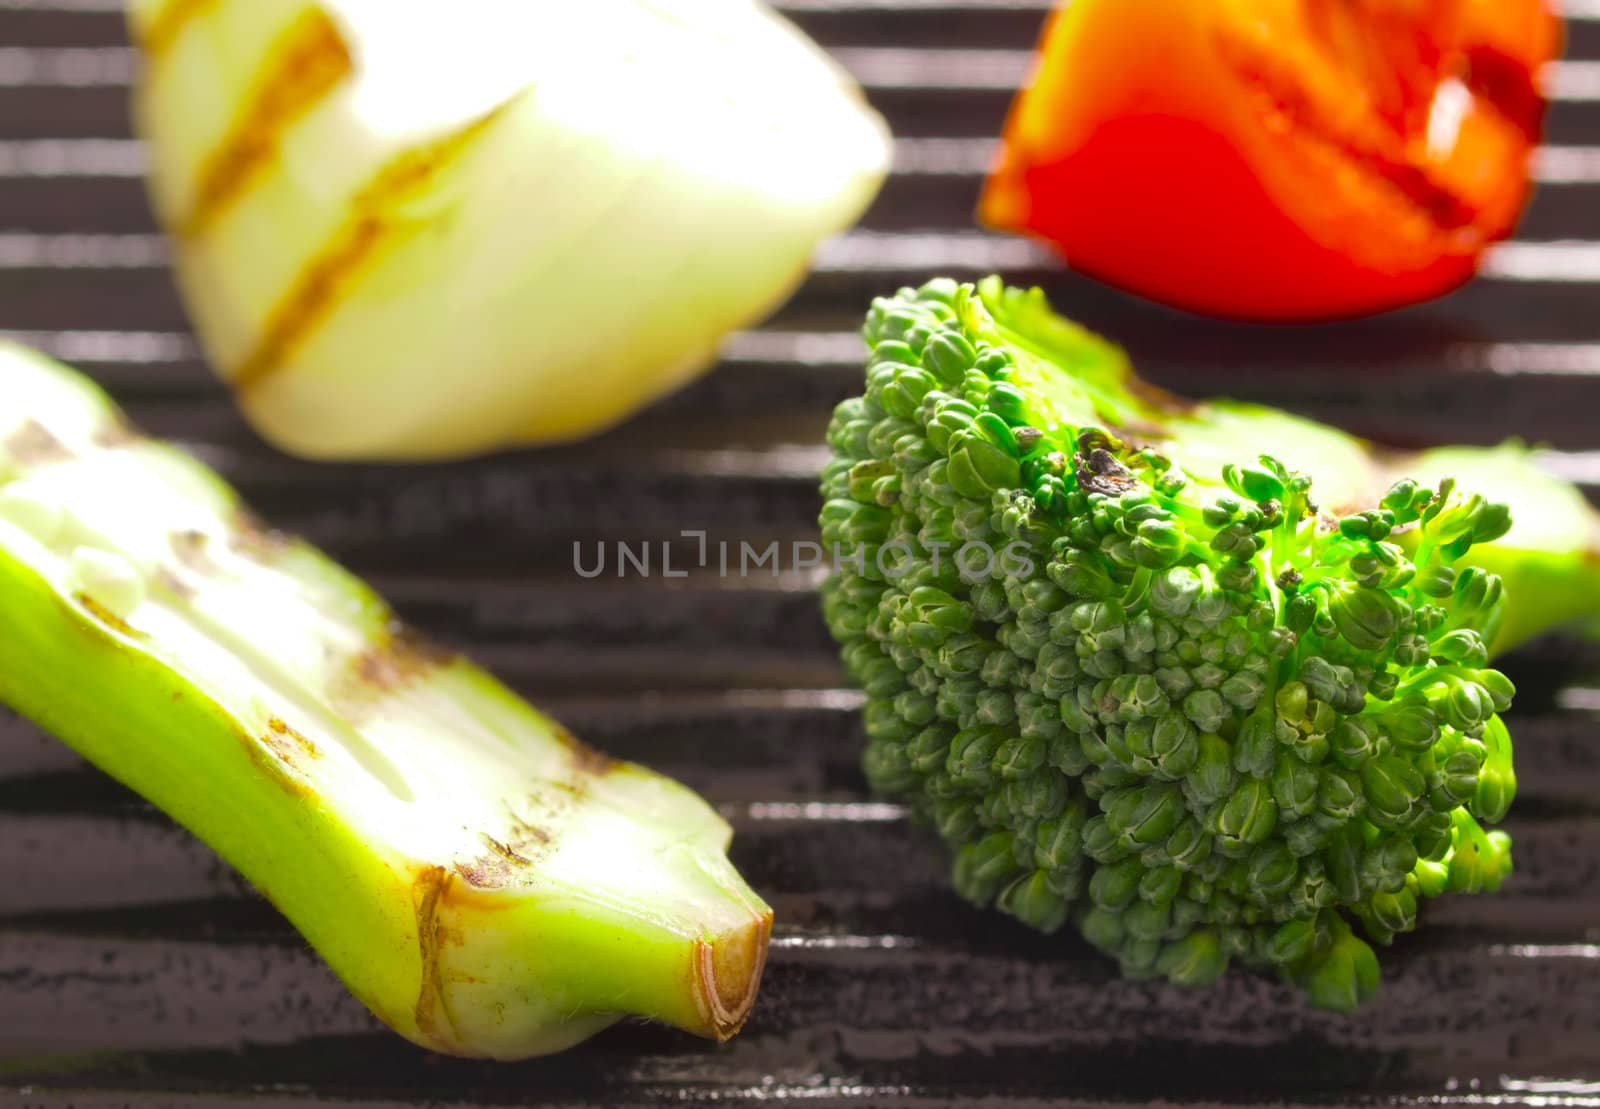 grilled vegetables by zkruger